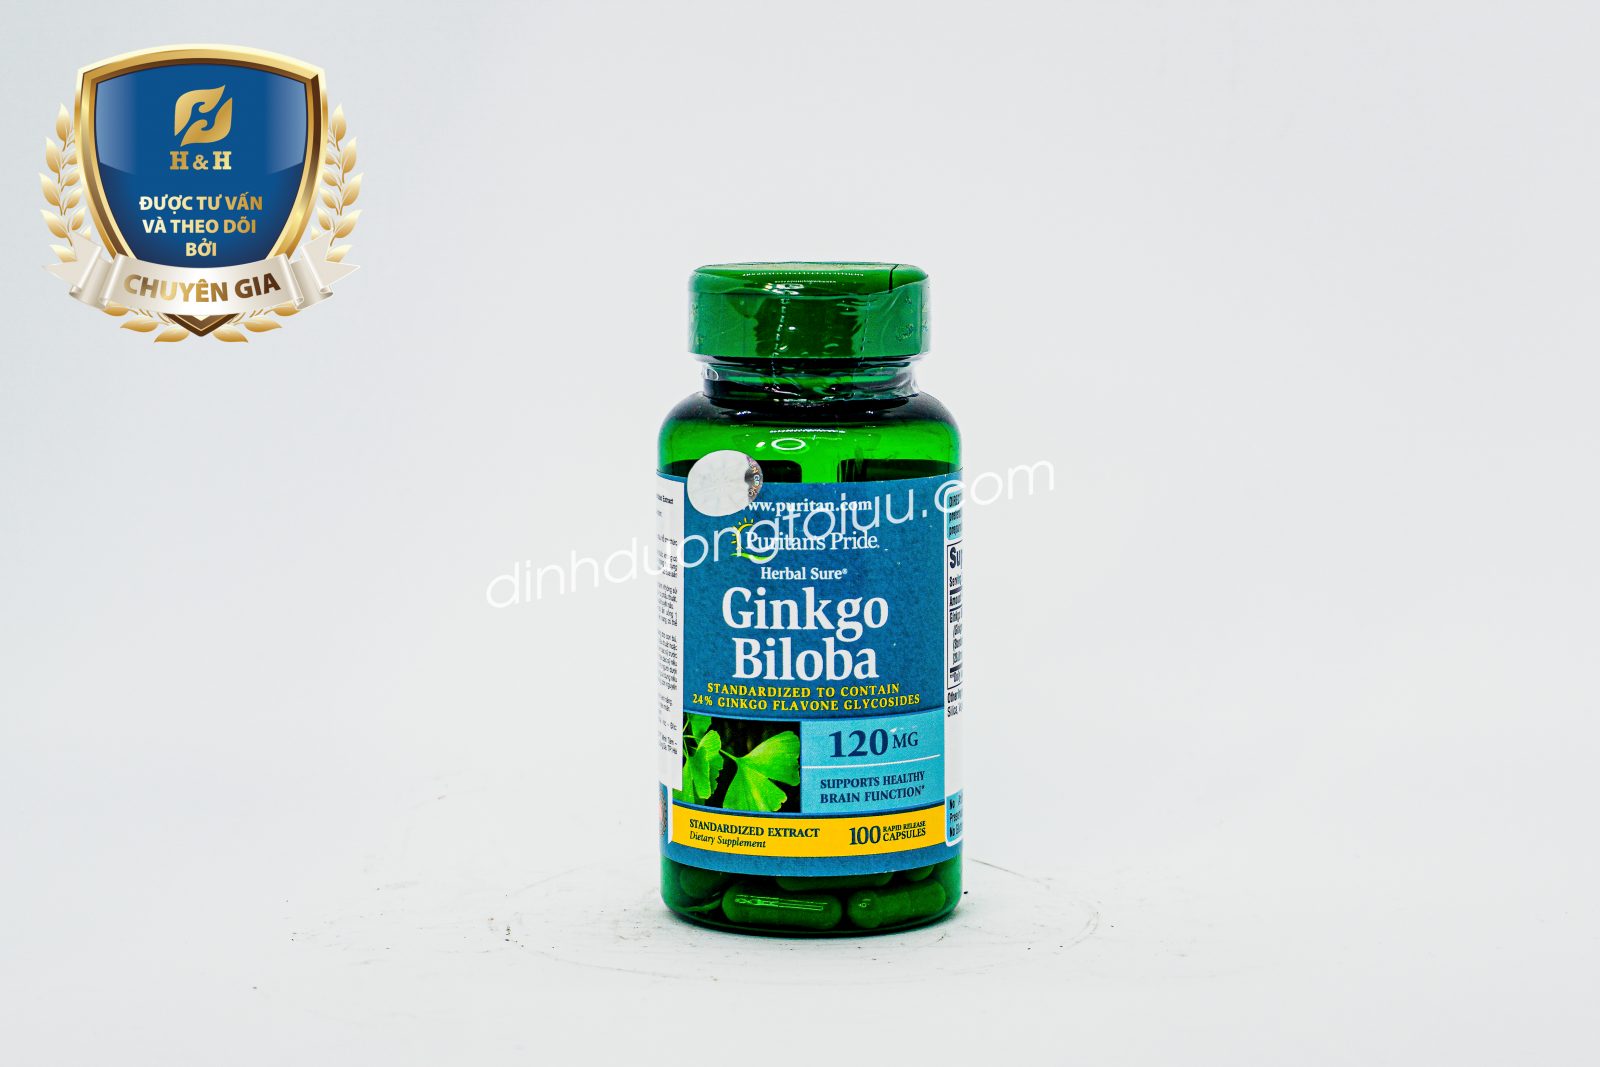 Ginkgo Biloba được sử dụng để giúp nâng cao sức khỏe của tuần hoàn não, chống hình thành cục máu đông, chống lại lão hóa và nguy cơ đột quỵ